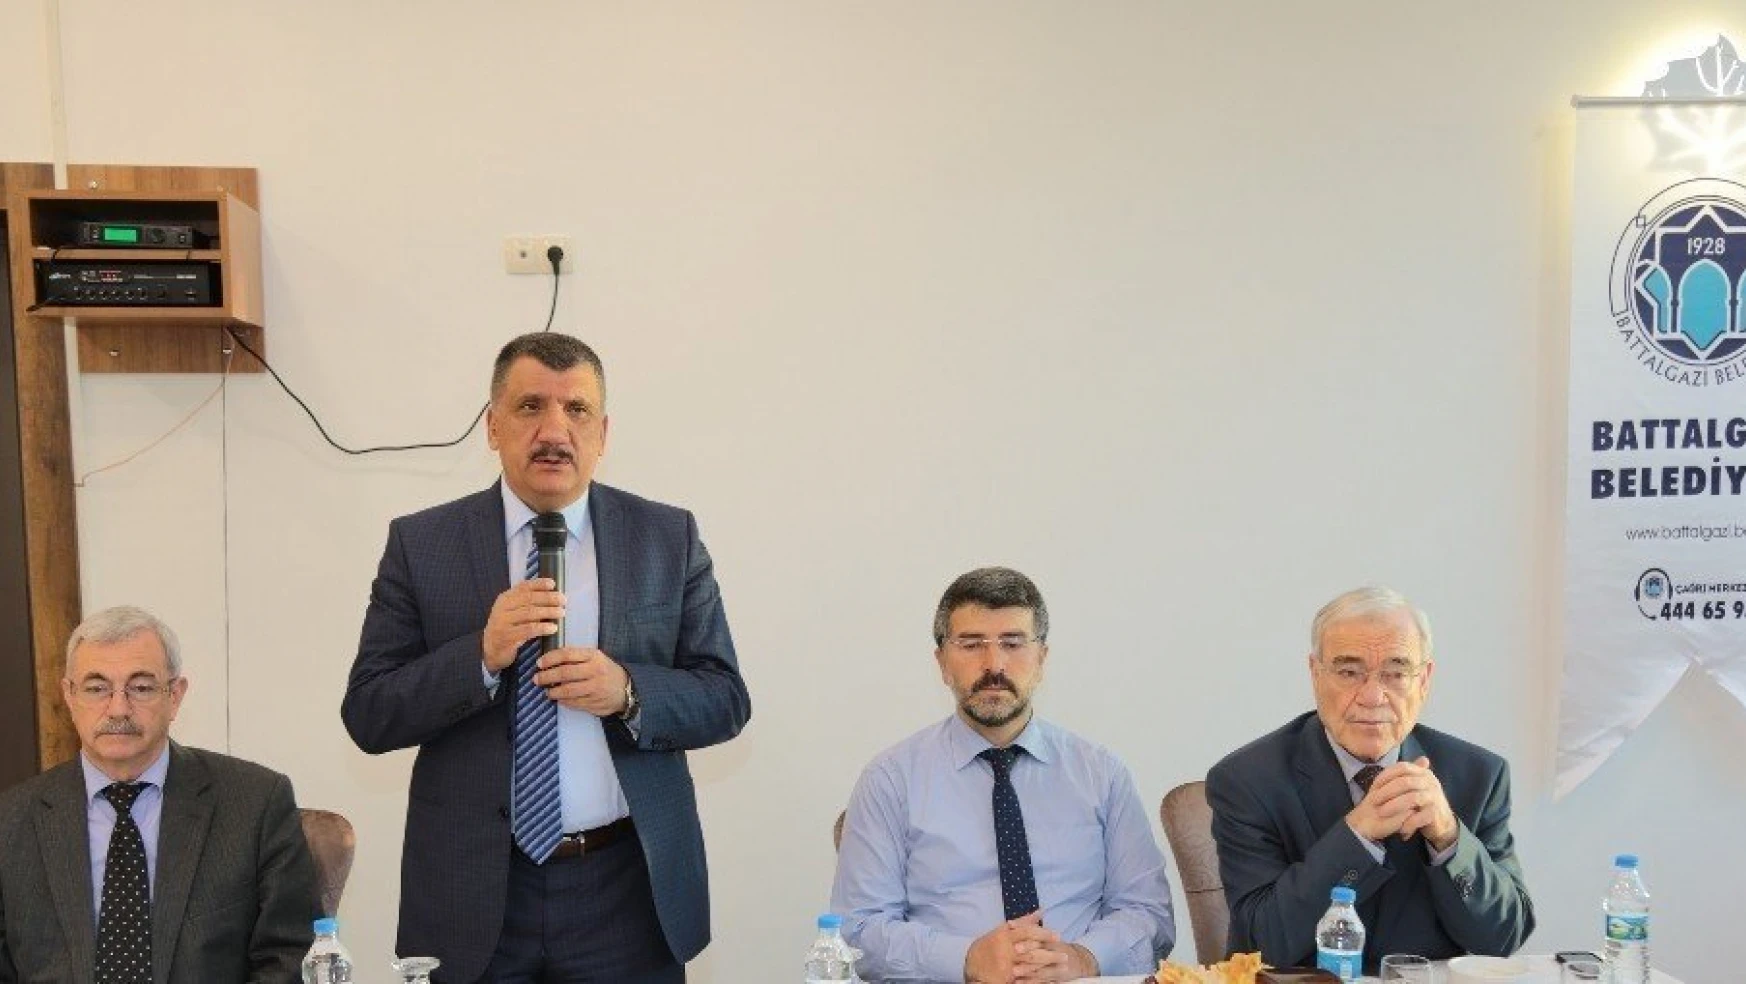 Belediye Başkanı Gürkan akademisyenlerle bir araya geldi
